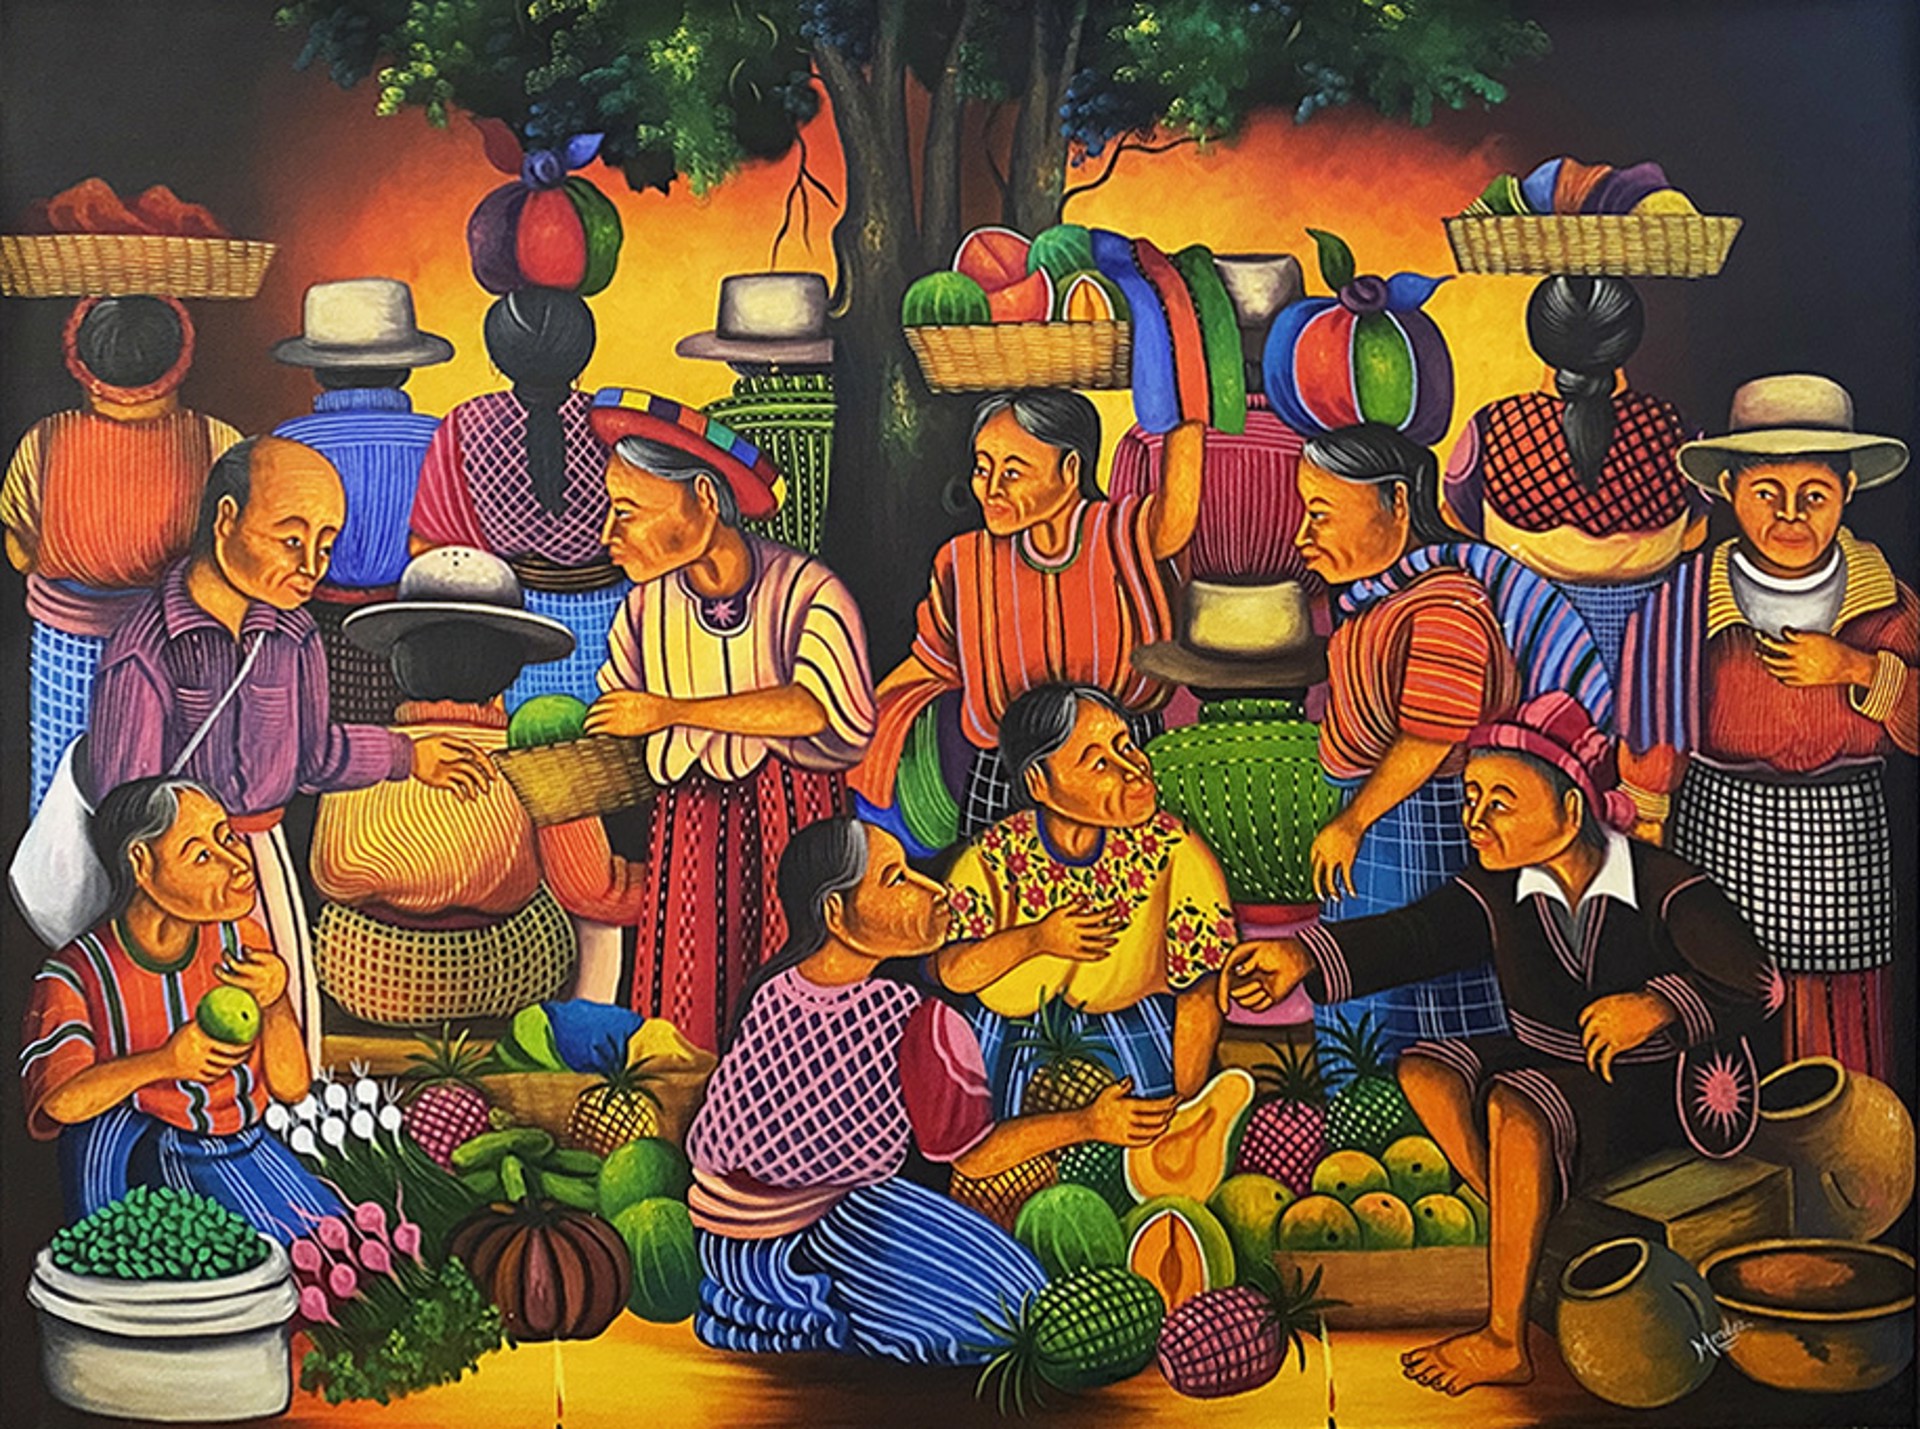 El Mercado by Artist Unknown